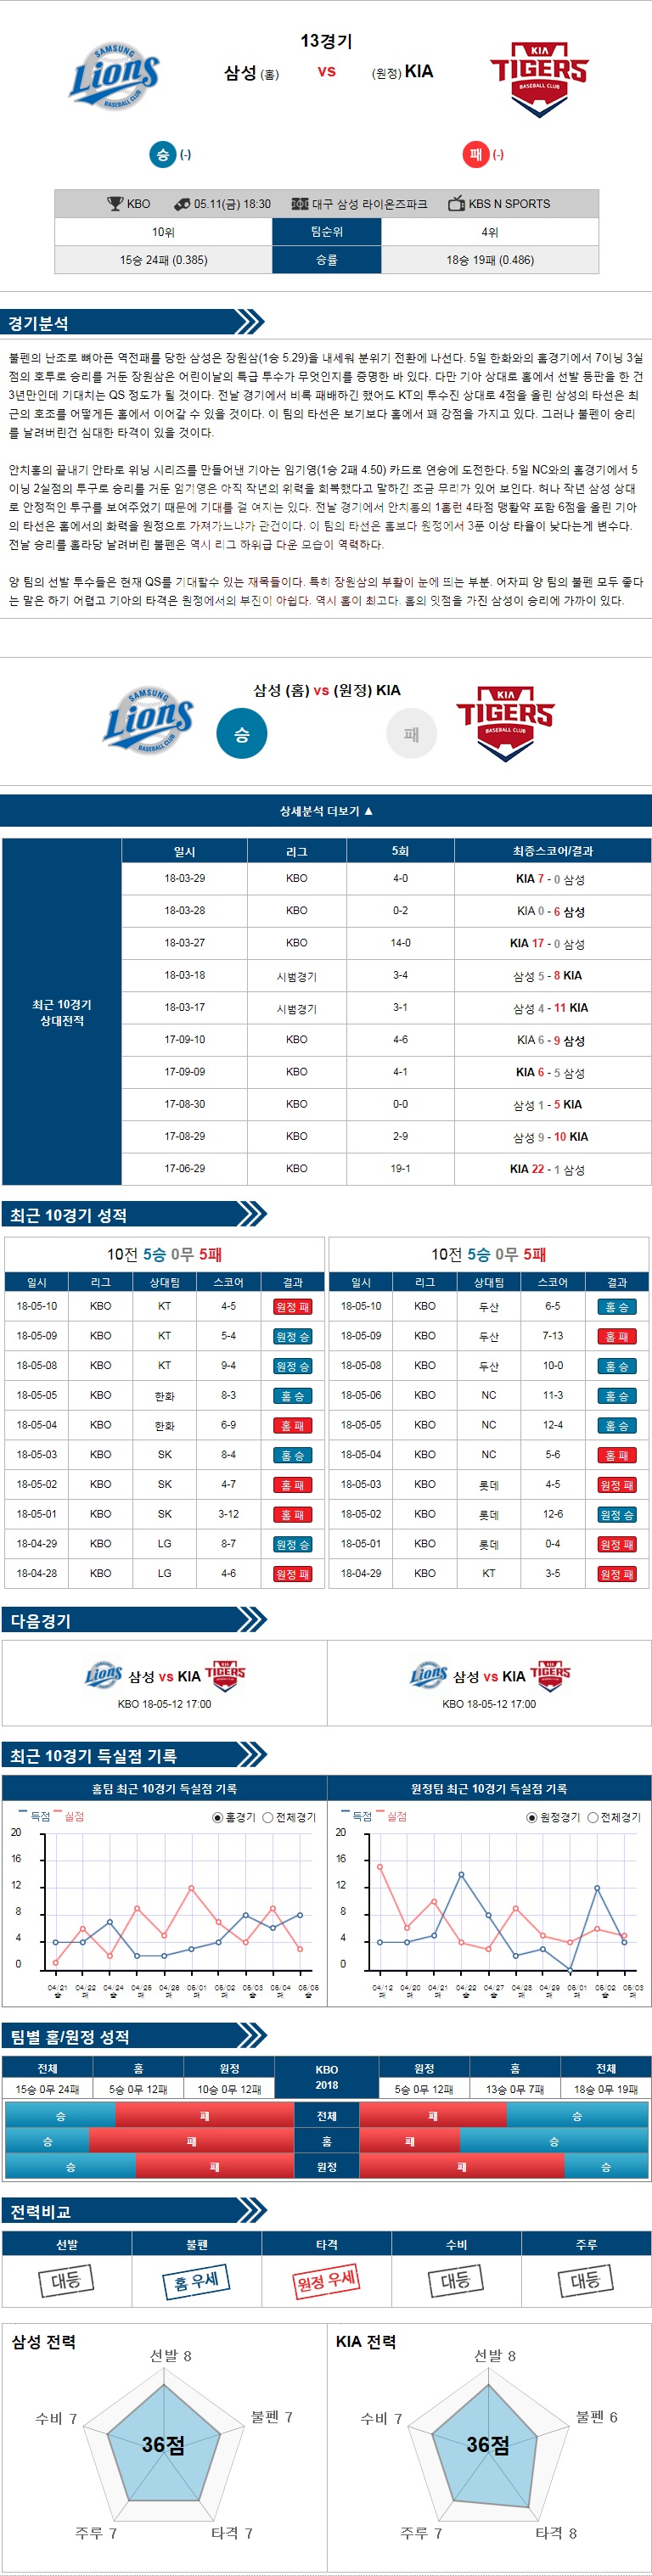 5-11 [KBO] 18:30 야구분석 삼성 vs KIA